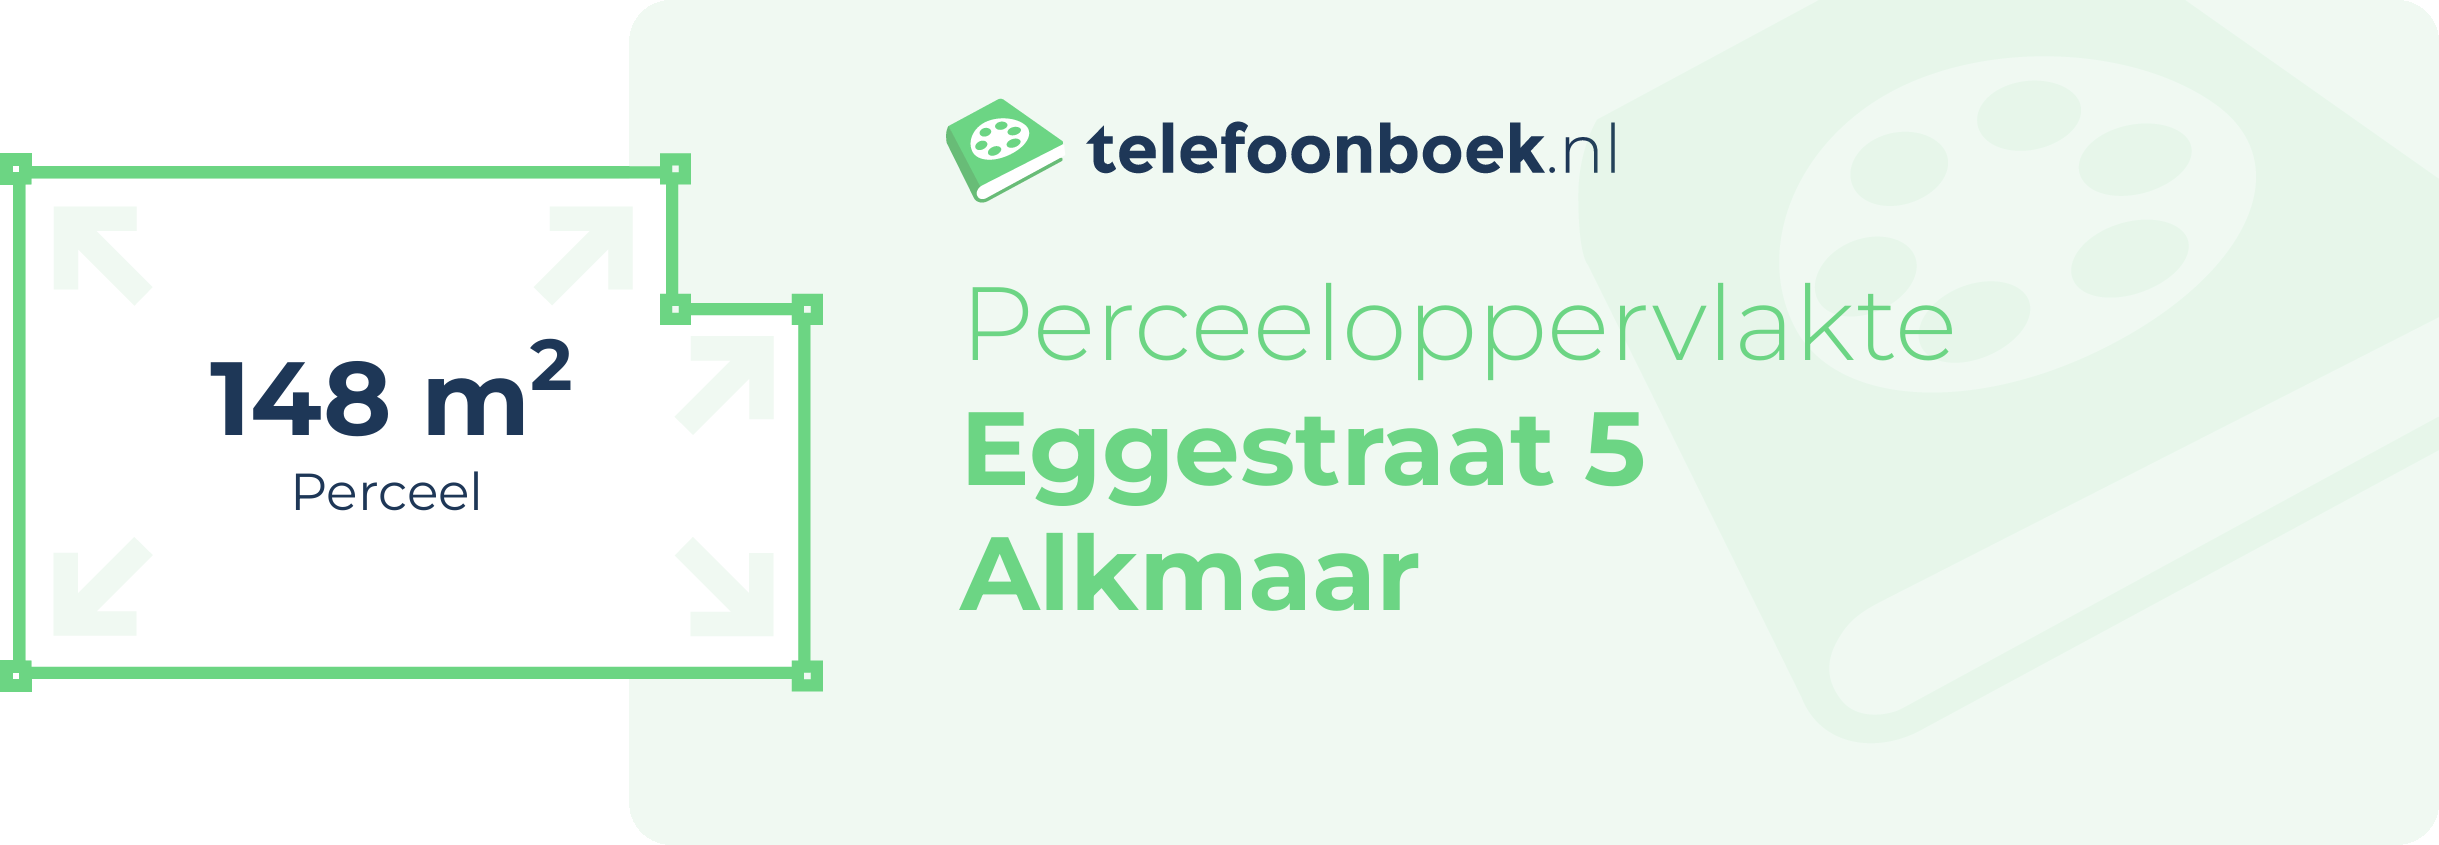 Perceeloppervlakte Eggestraat 5 Alkmaar